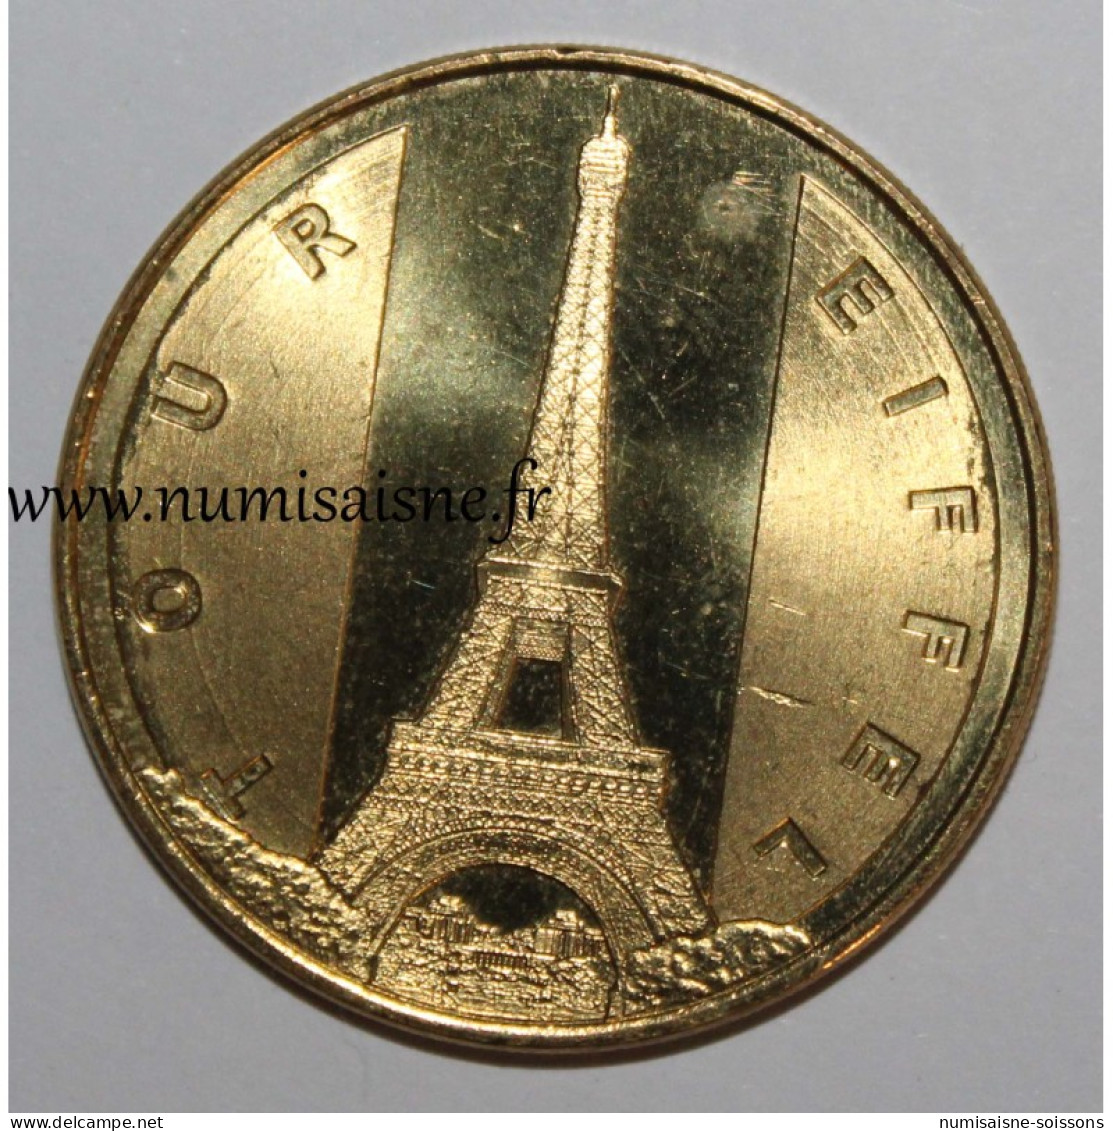 75 - PARIS - TOUR EIFFEL - Monnaie De Paris - 2014 - 2014